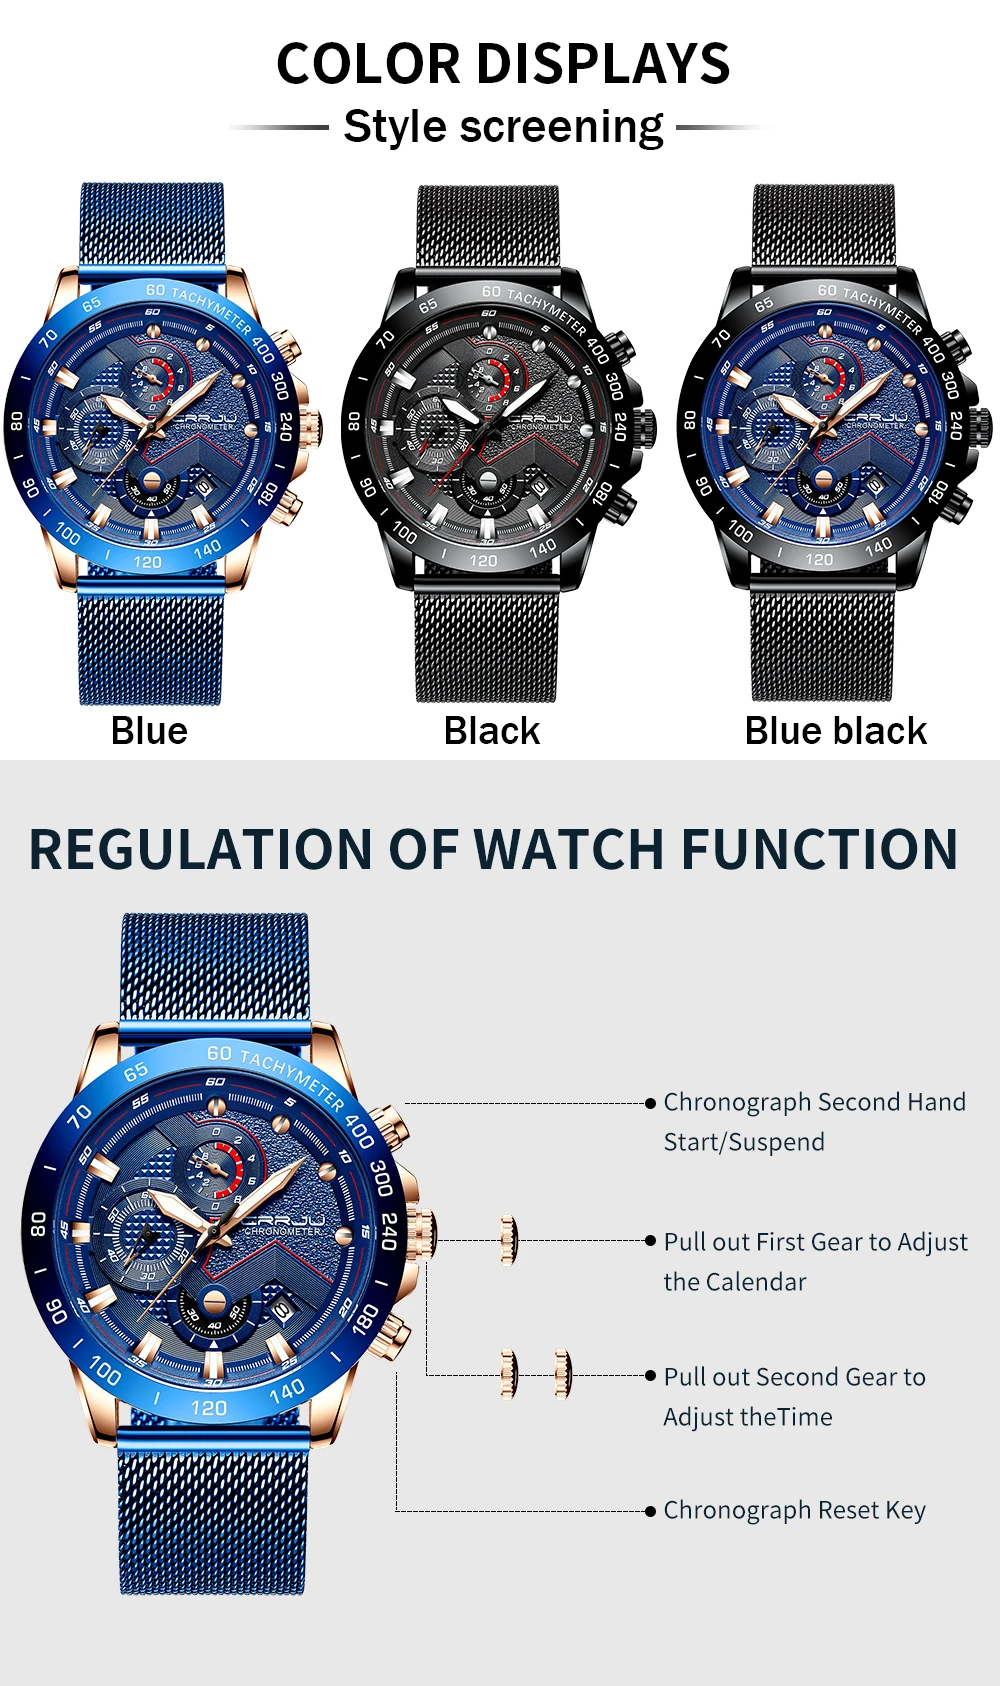 CRRJU Модные мужские s часы роскошные часы наручные, кварцевые часы синие часы мужские водонепроницаемые спортивные хронограф Relogio Masculino